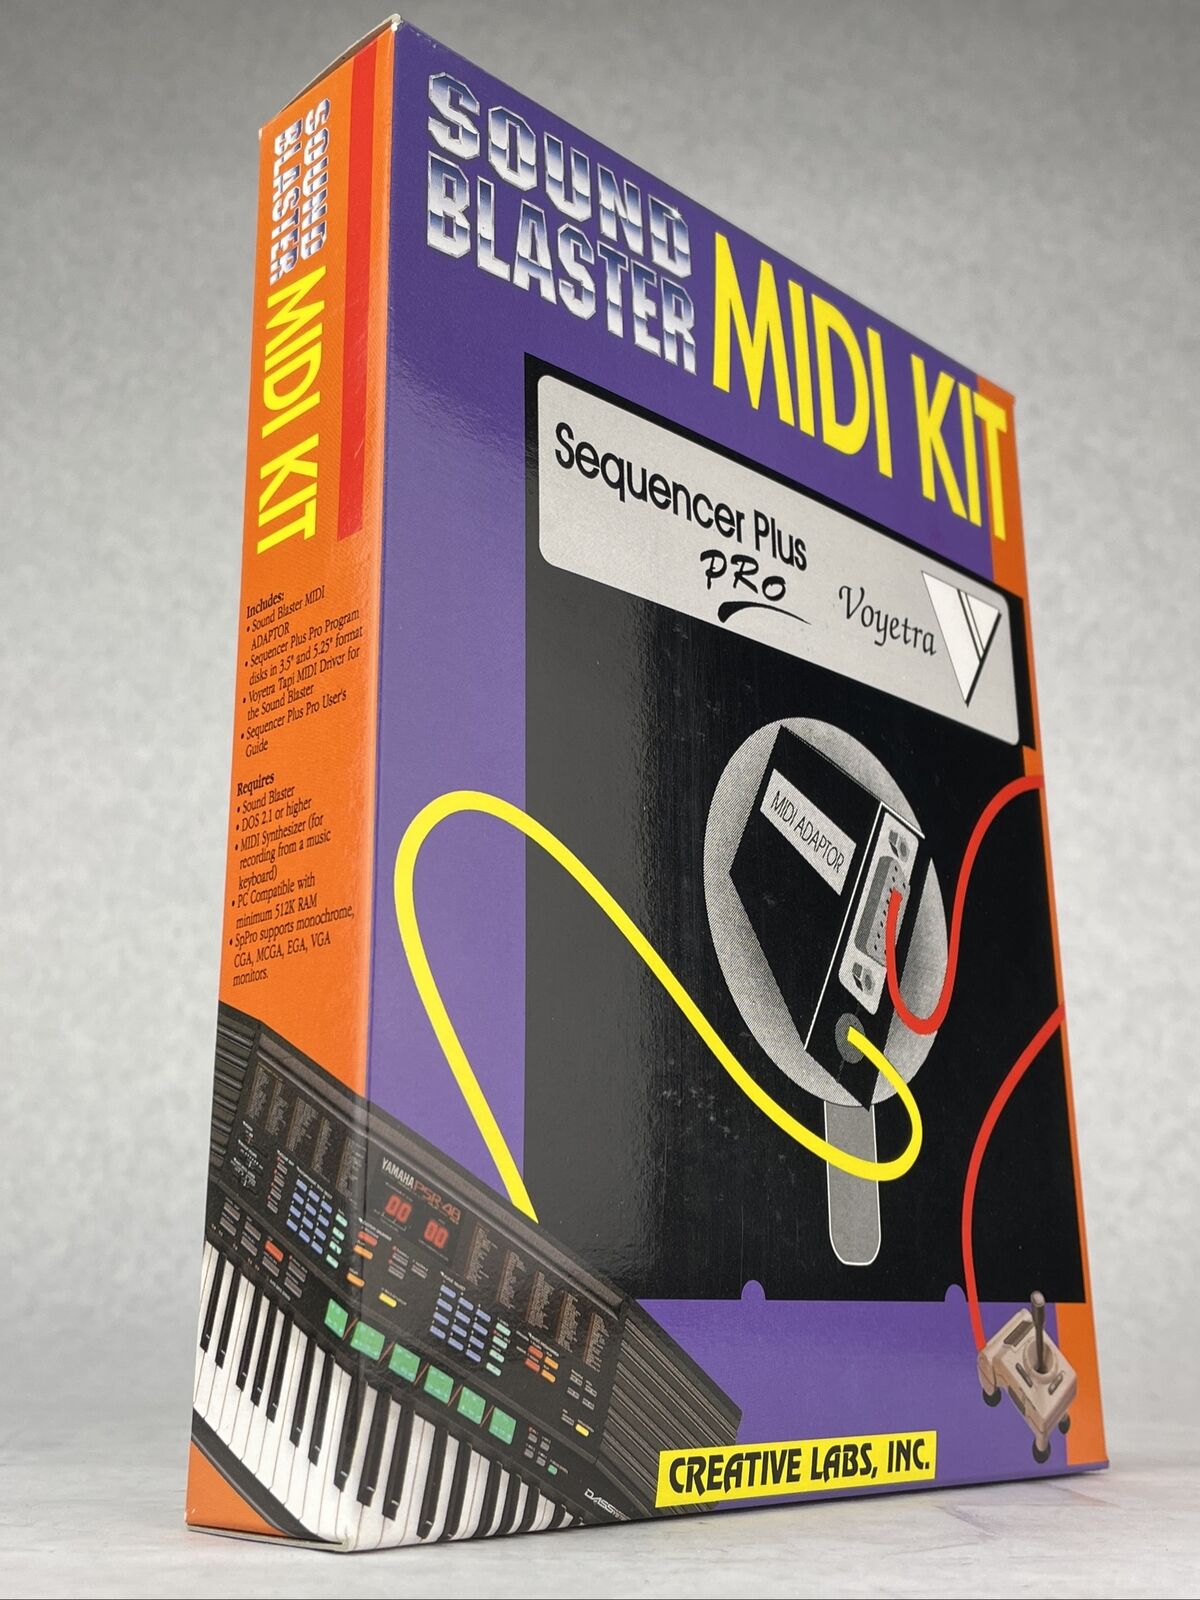 New Sound Blaster MIDI Kit Voyetra Sequencer Plus PRO